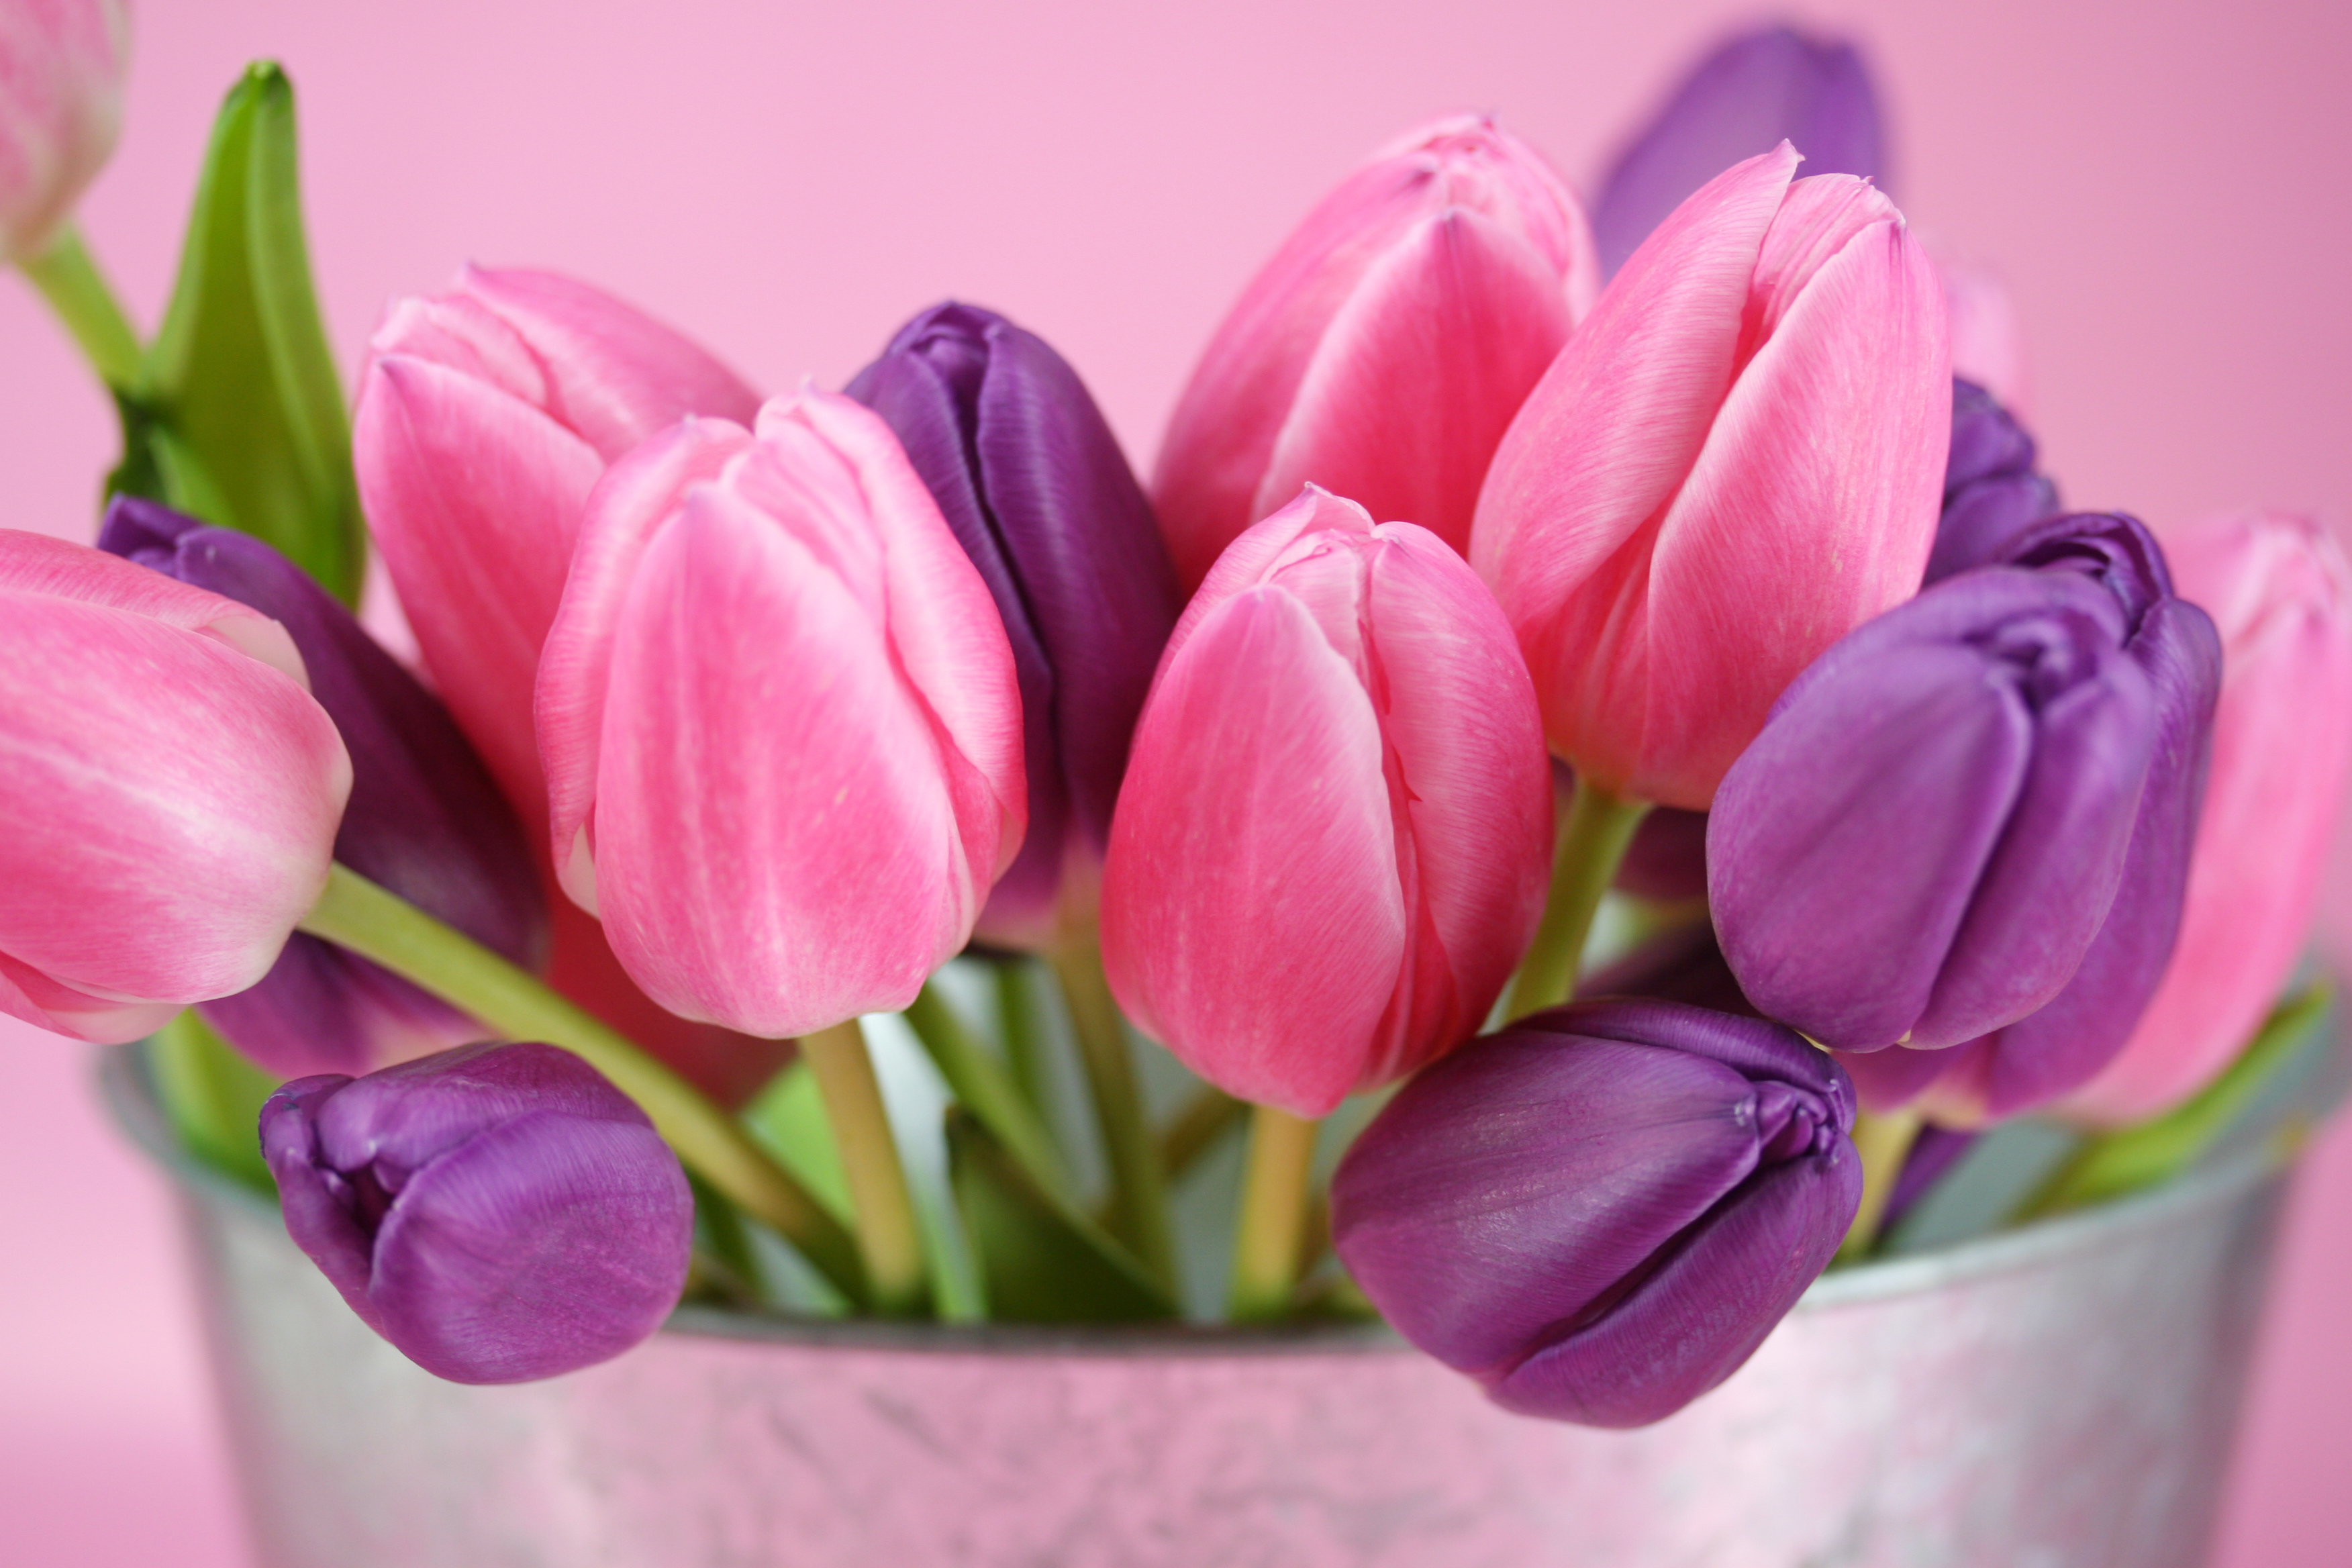 Обои на телефон красивые тюльпаны. Тюльпан Пинк Стоун. Тюльпан Мелроуз. Весенние цветы тюльпаны. Розовые тюльпаны.